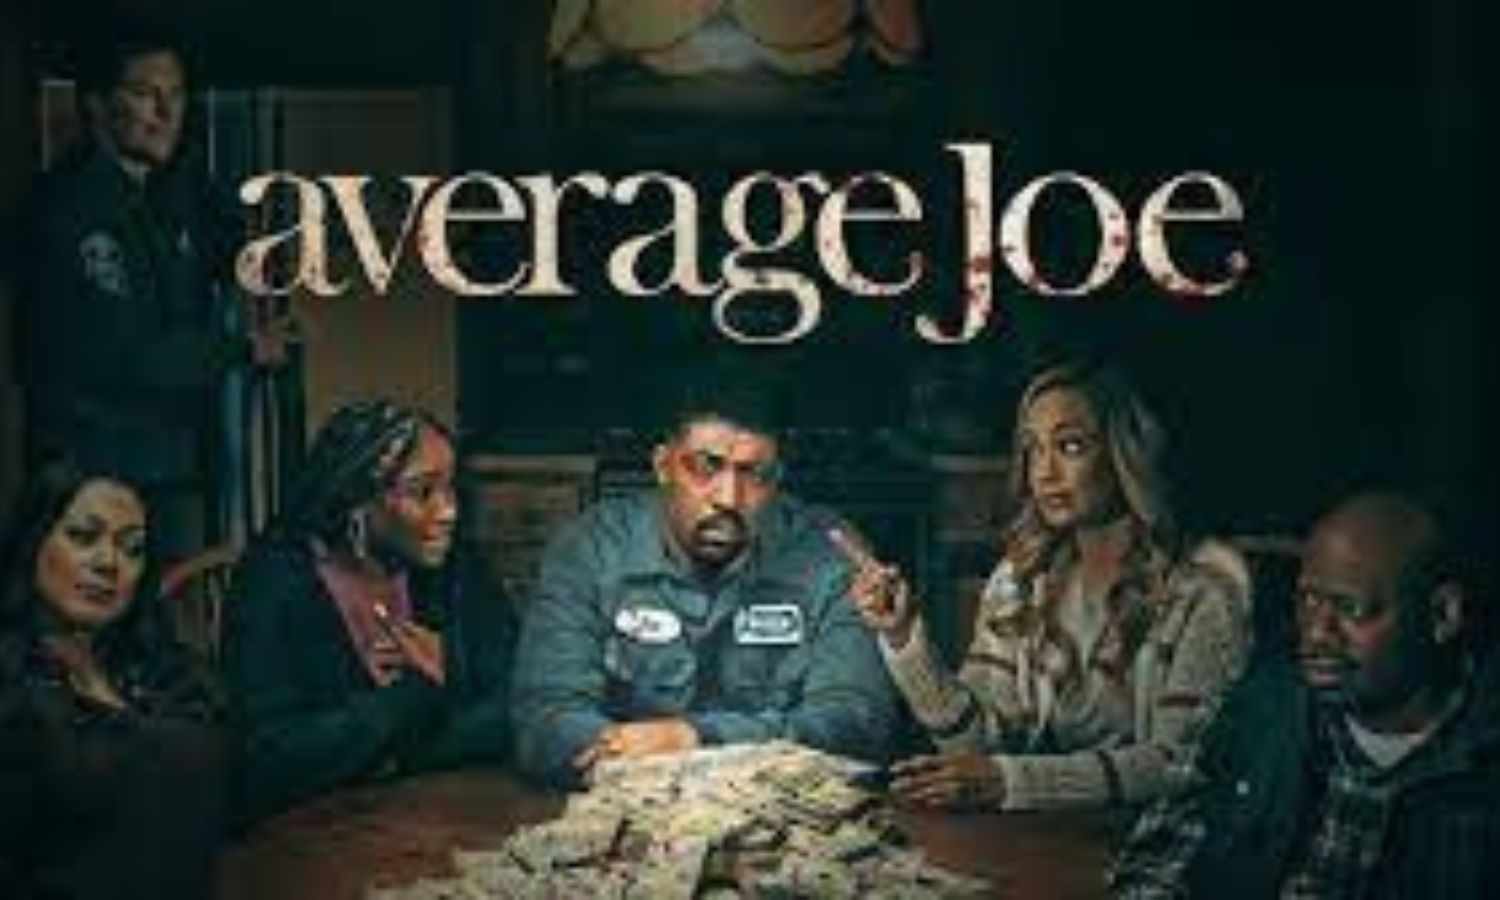 Average Joe Season 1 Episode 8 Review